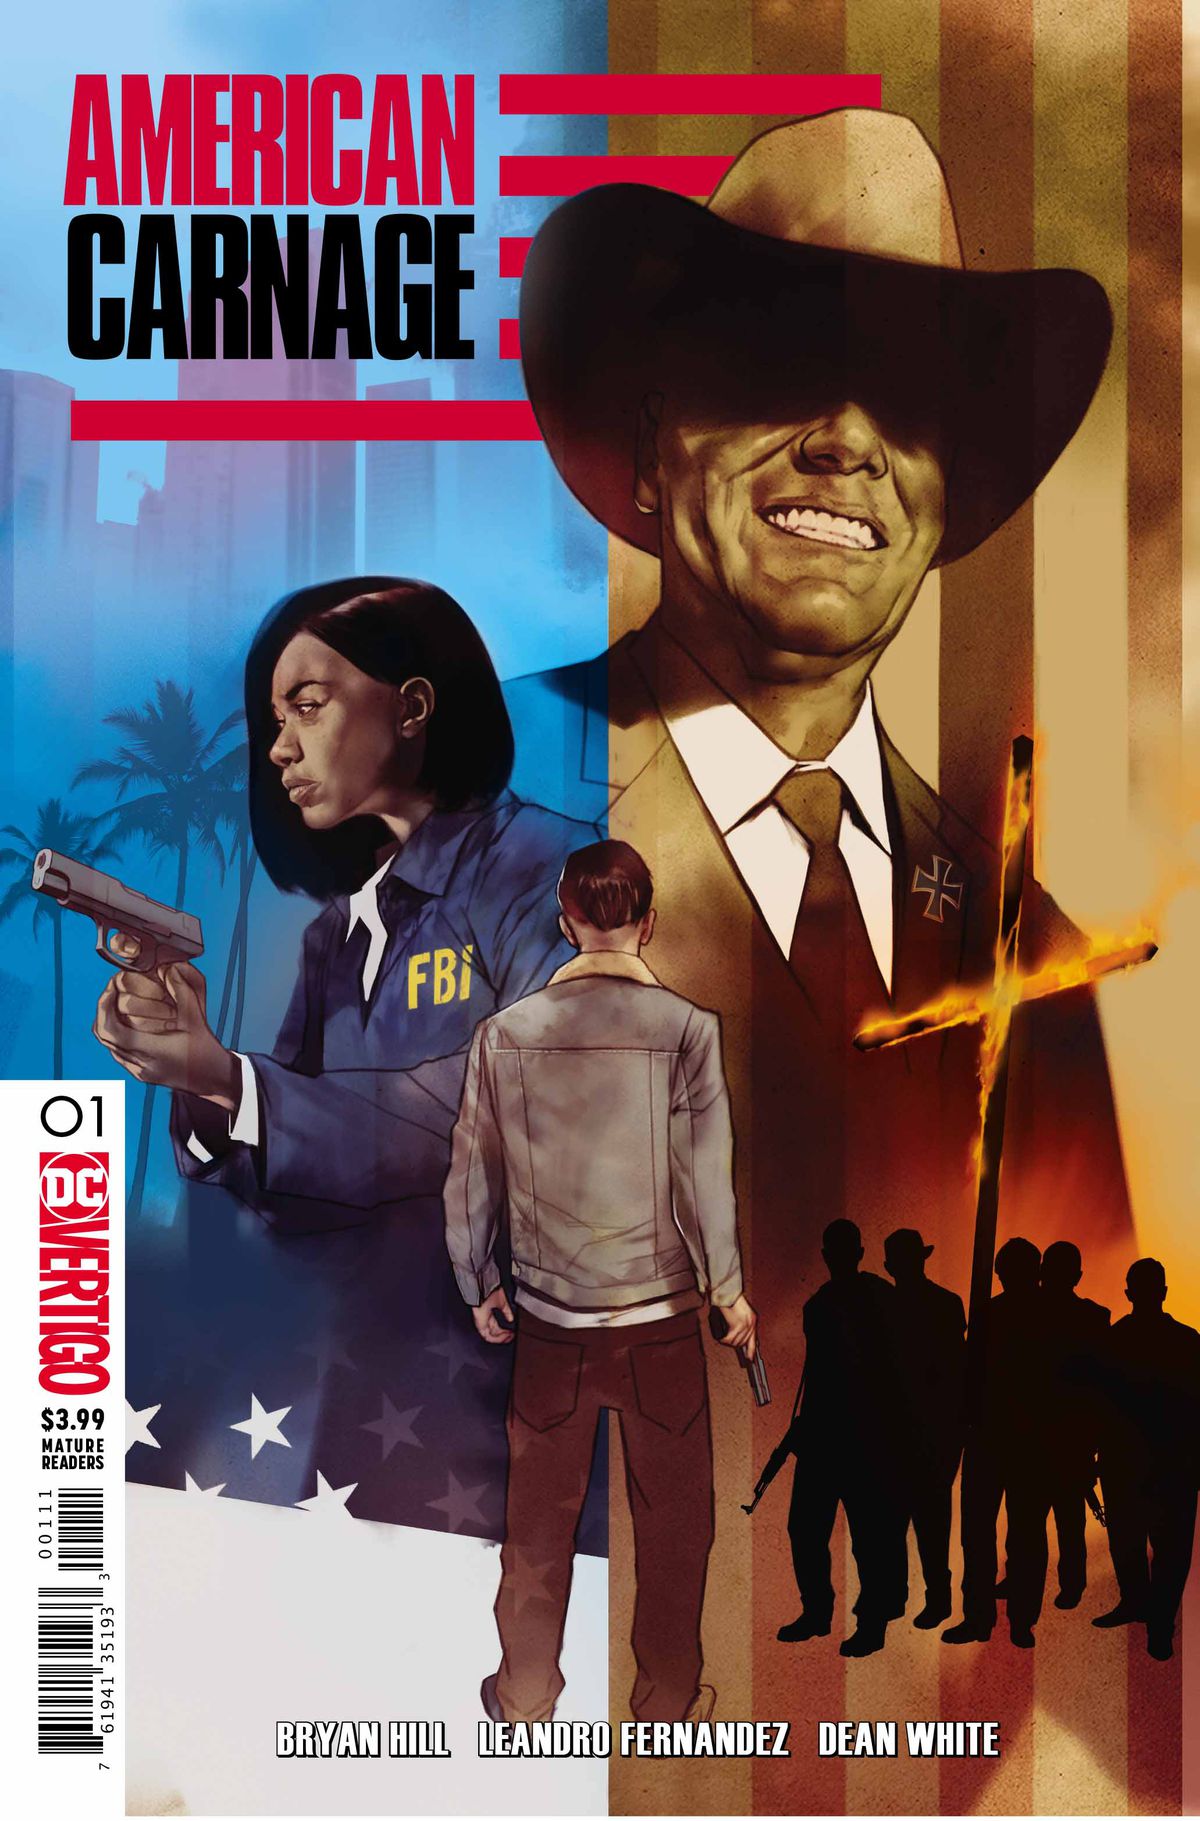 The cover of American Carnage, DC Vertigo (2018).